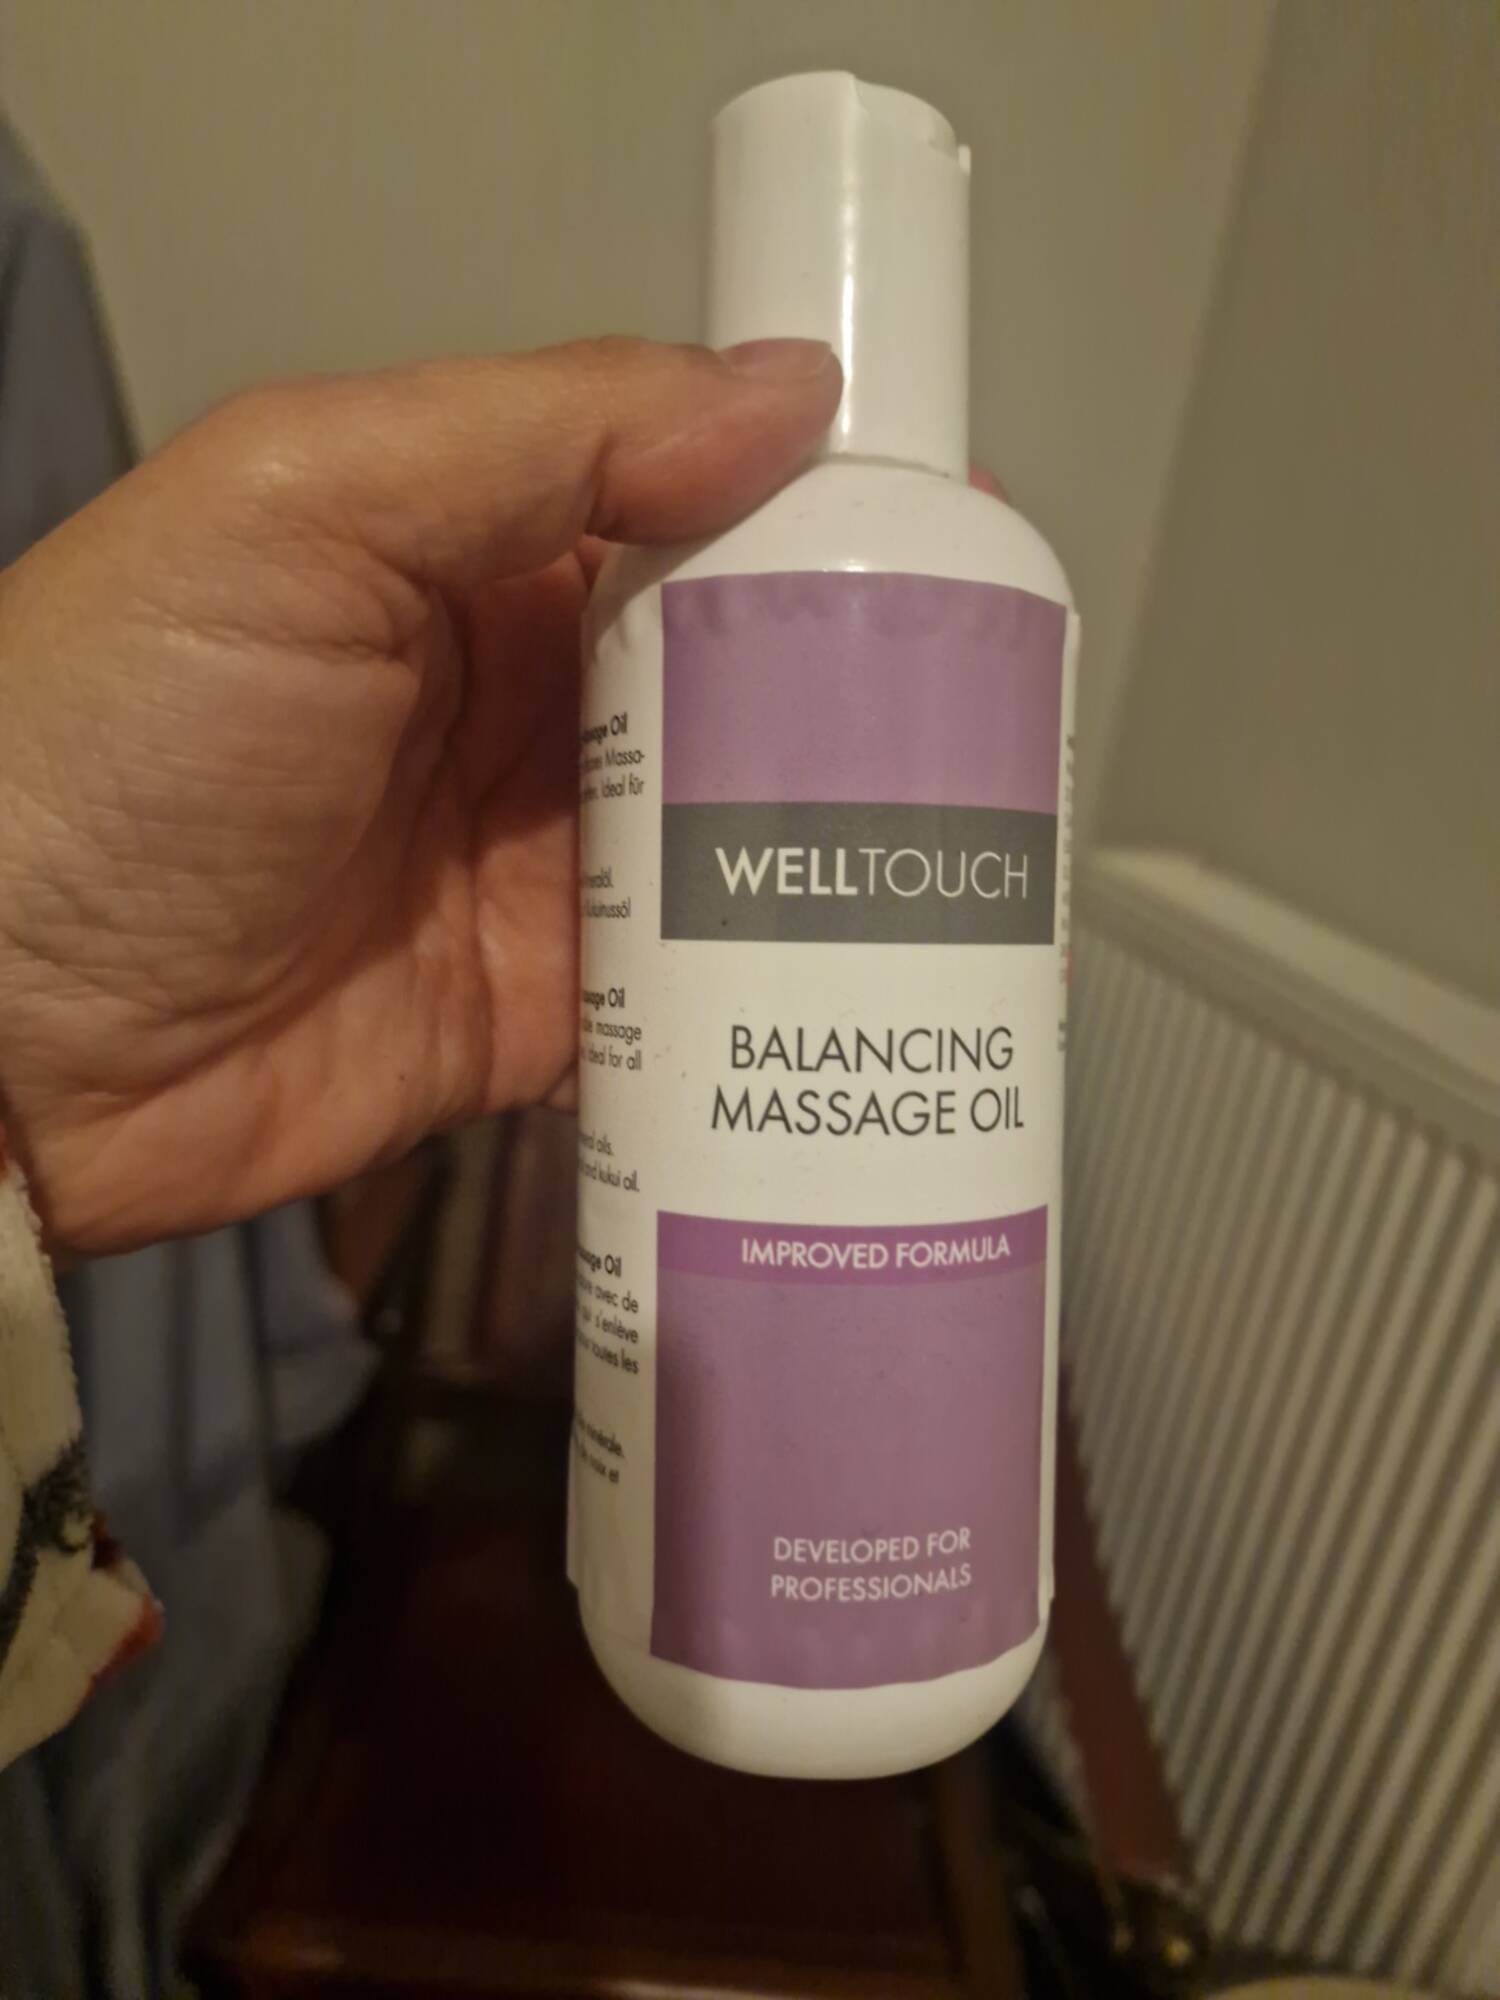 WELLTOUCH - Balancing massage oil